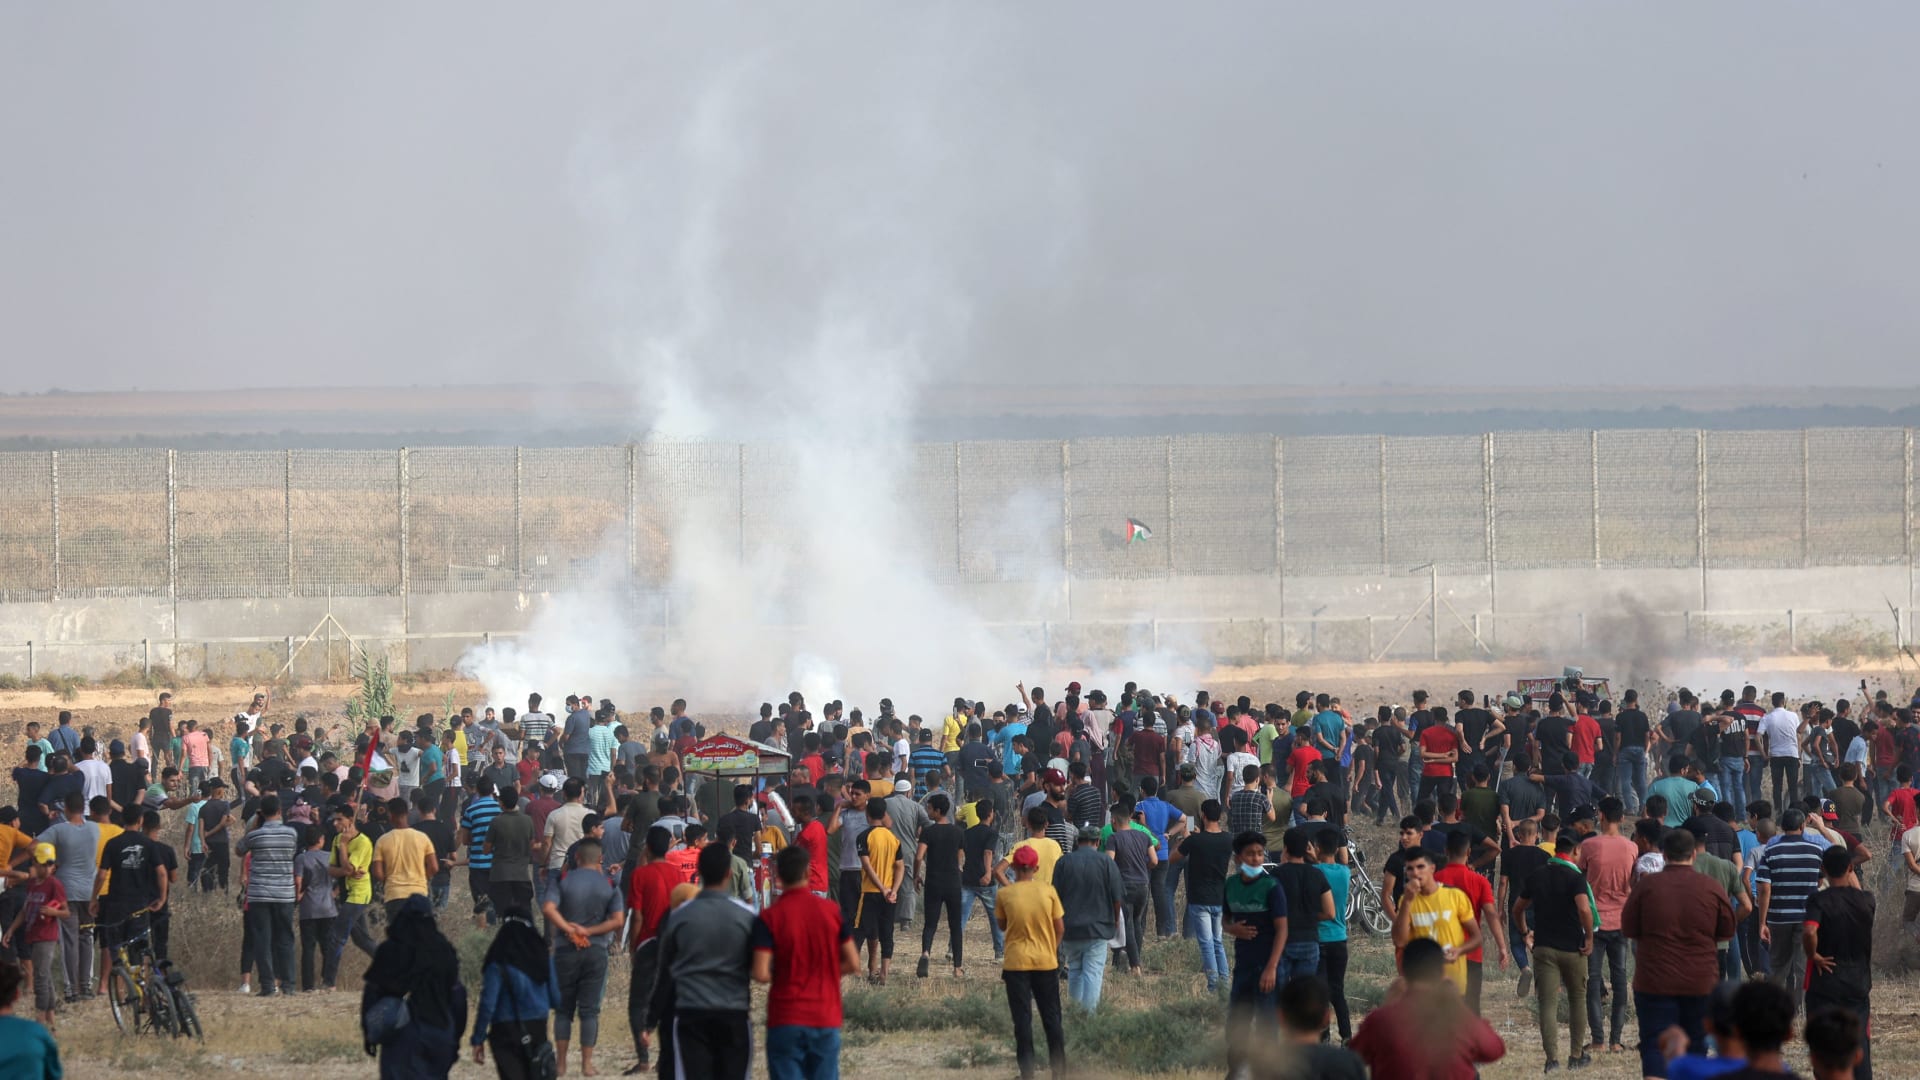 الغاز المسيل للدموع الذي أطلقته قوات الأمن الإسرائيلية عبر السياج الحدودي لقطاع غزة